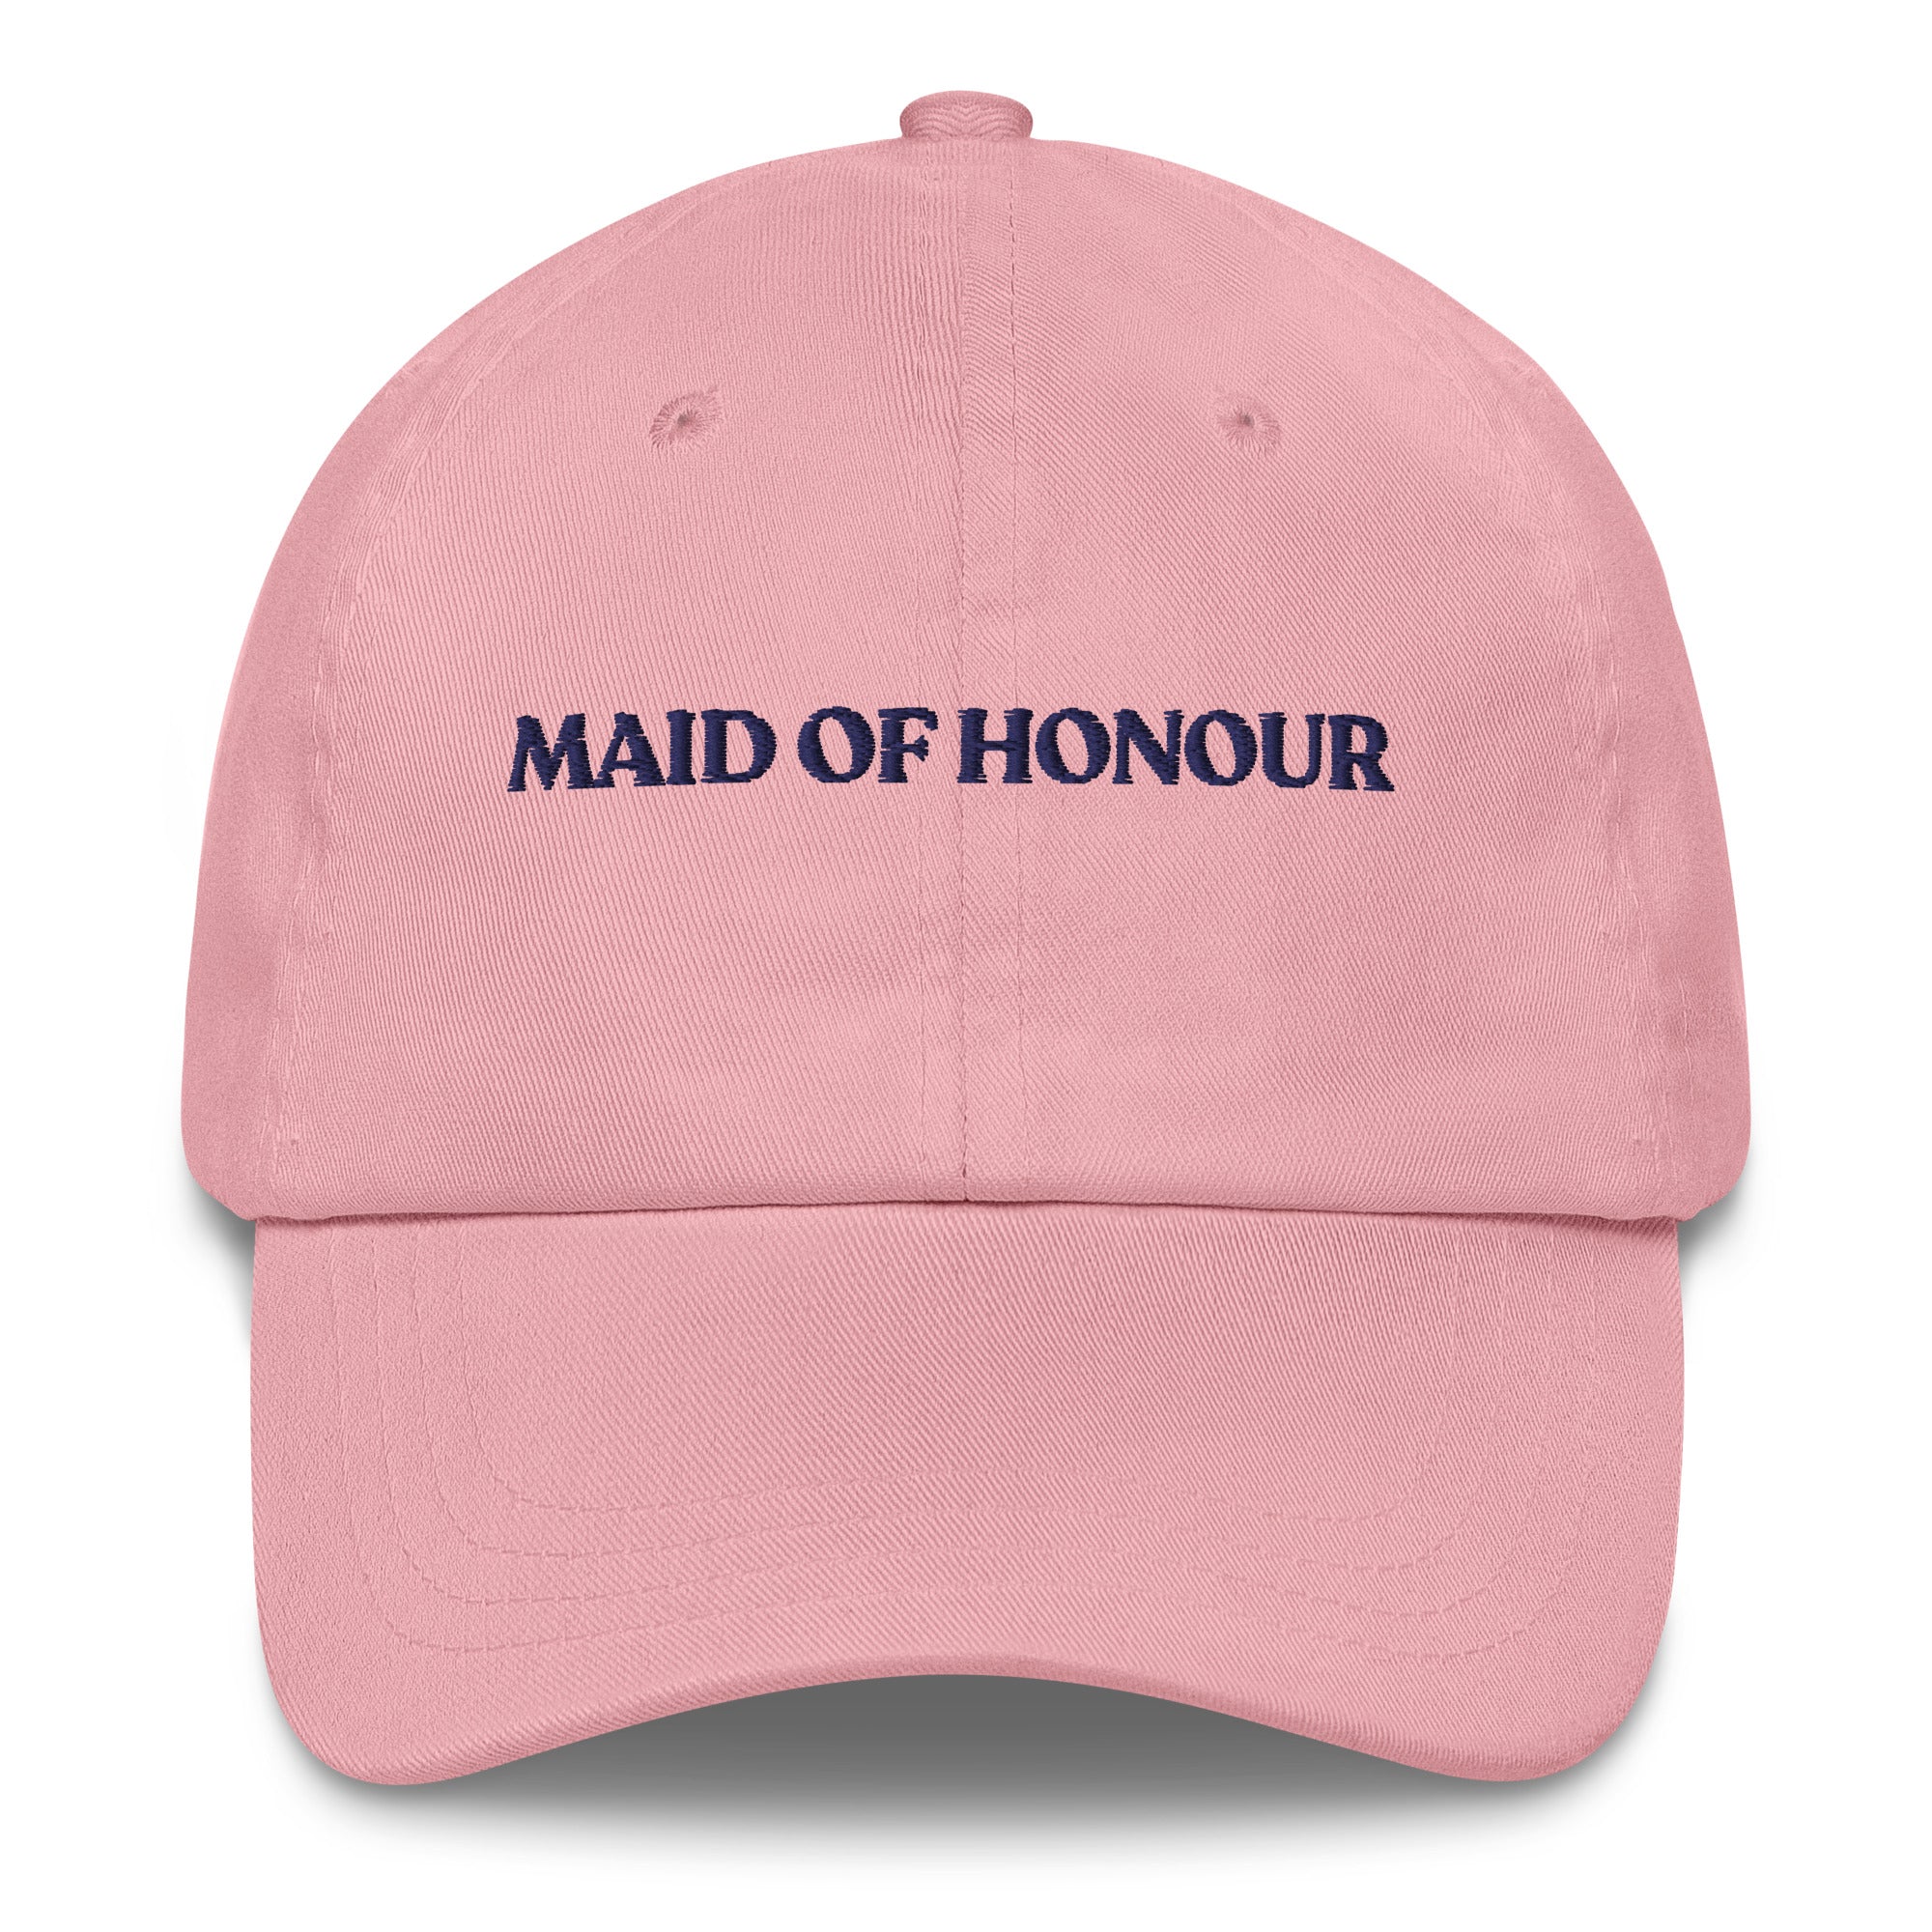 Maid of Honour - Cap